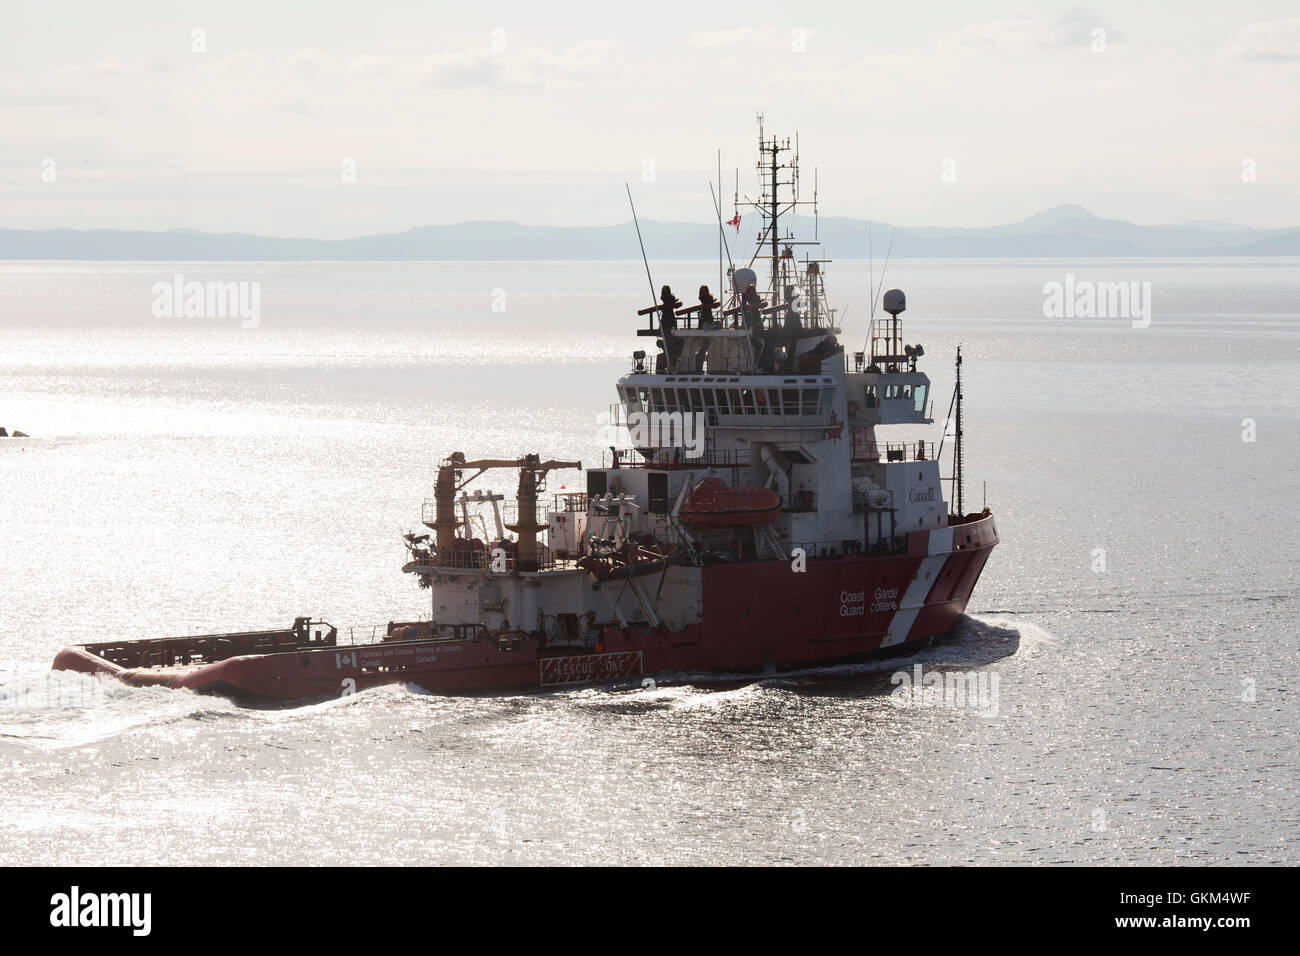 Un buque Guardacostas canadiense frente a las costas de Terranova y Labrador, Canadá. El buque tiene colores distintivos rojo y blanco. Foto de stock